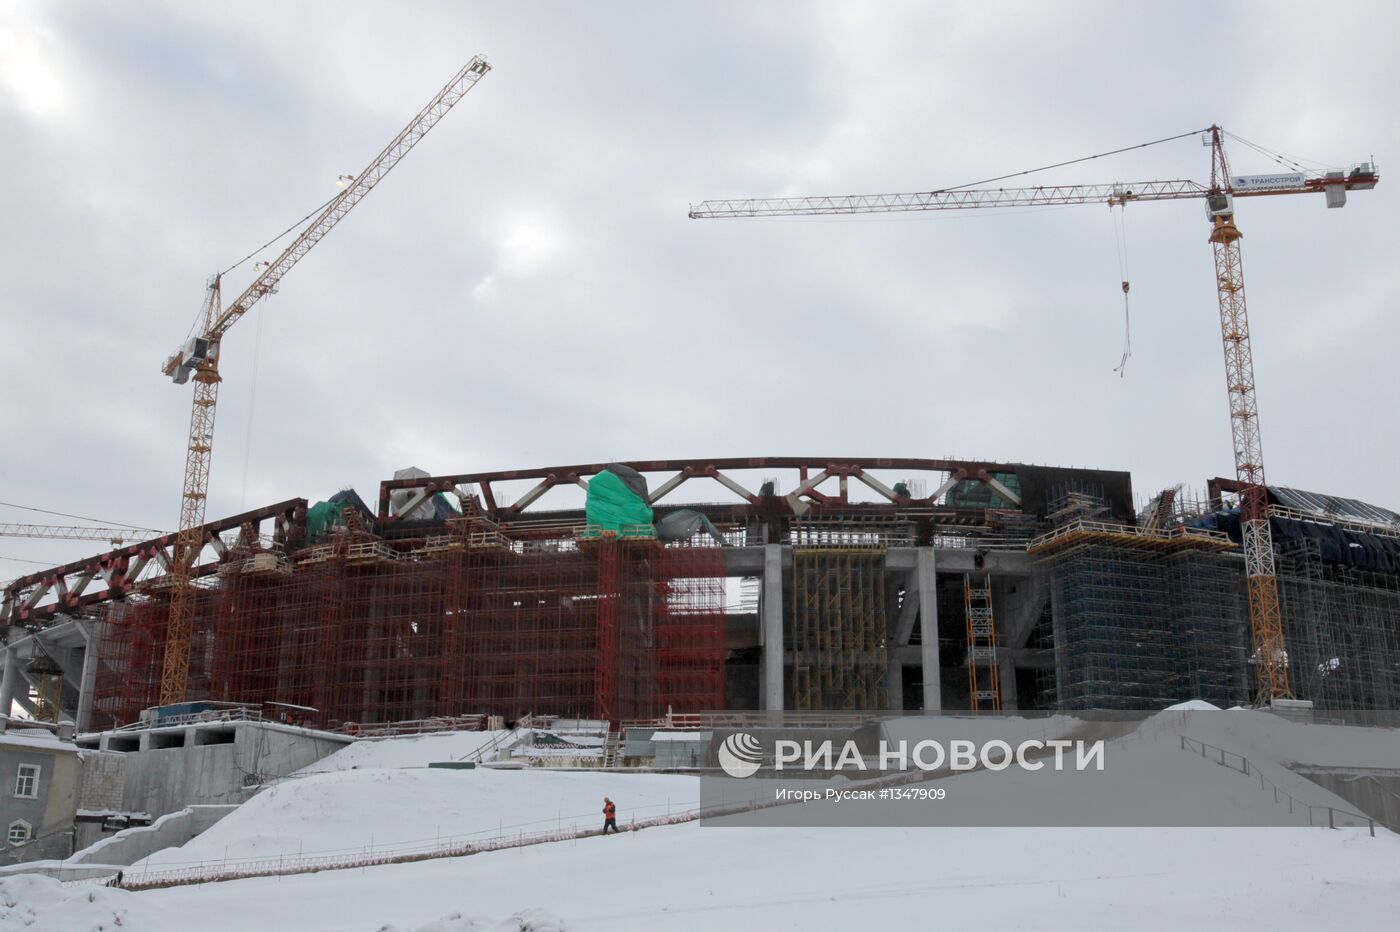 Строительство стадиона "Зенит-арена" в Санкт-Петербурге